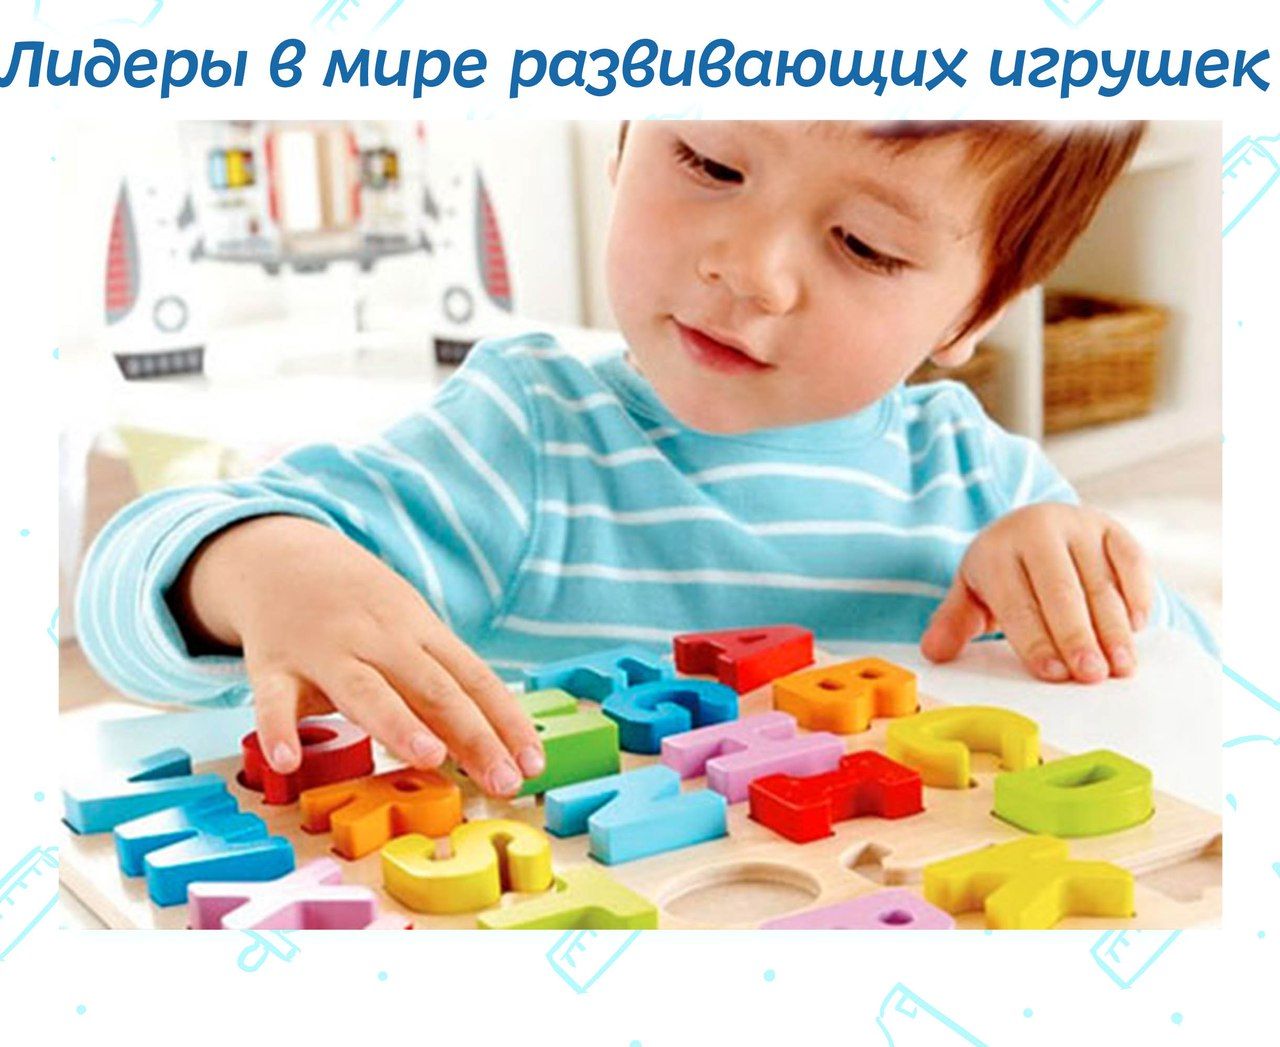 Игры для развития малыша. Игрушки для детей раннего возраста. Игры для детей раннего возраста. Игрушки для умственного развития детей. Дети раннего возраста.